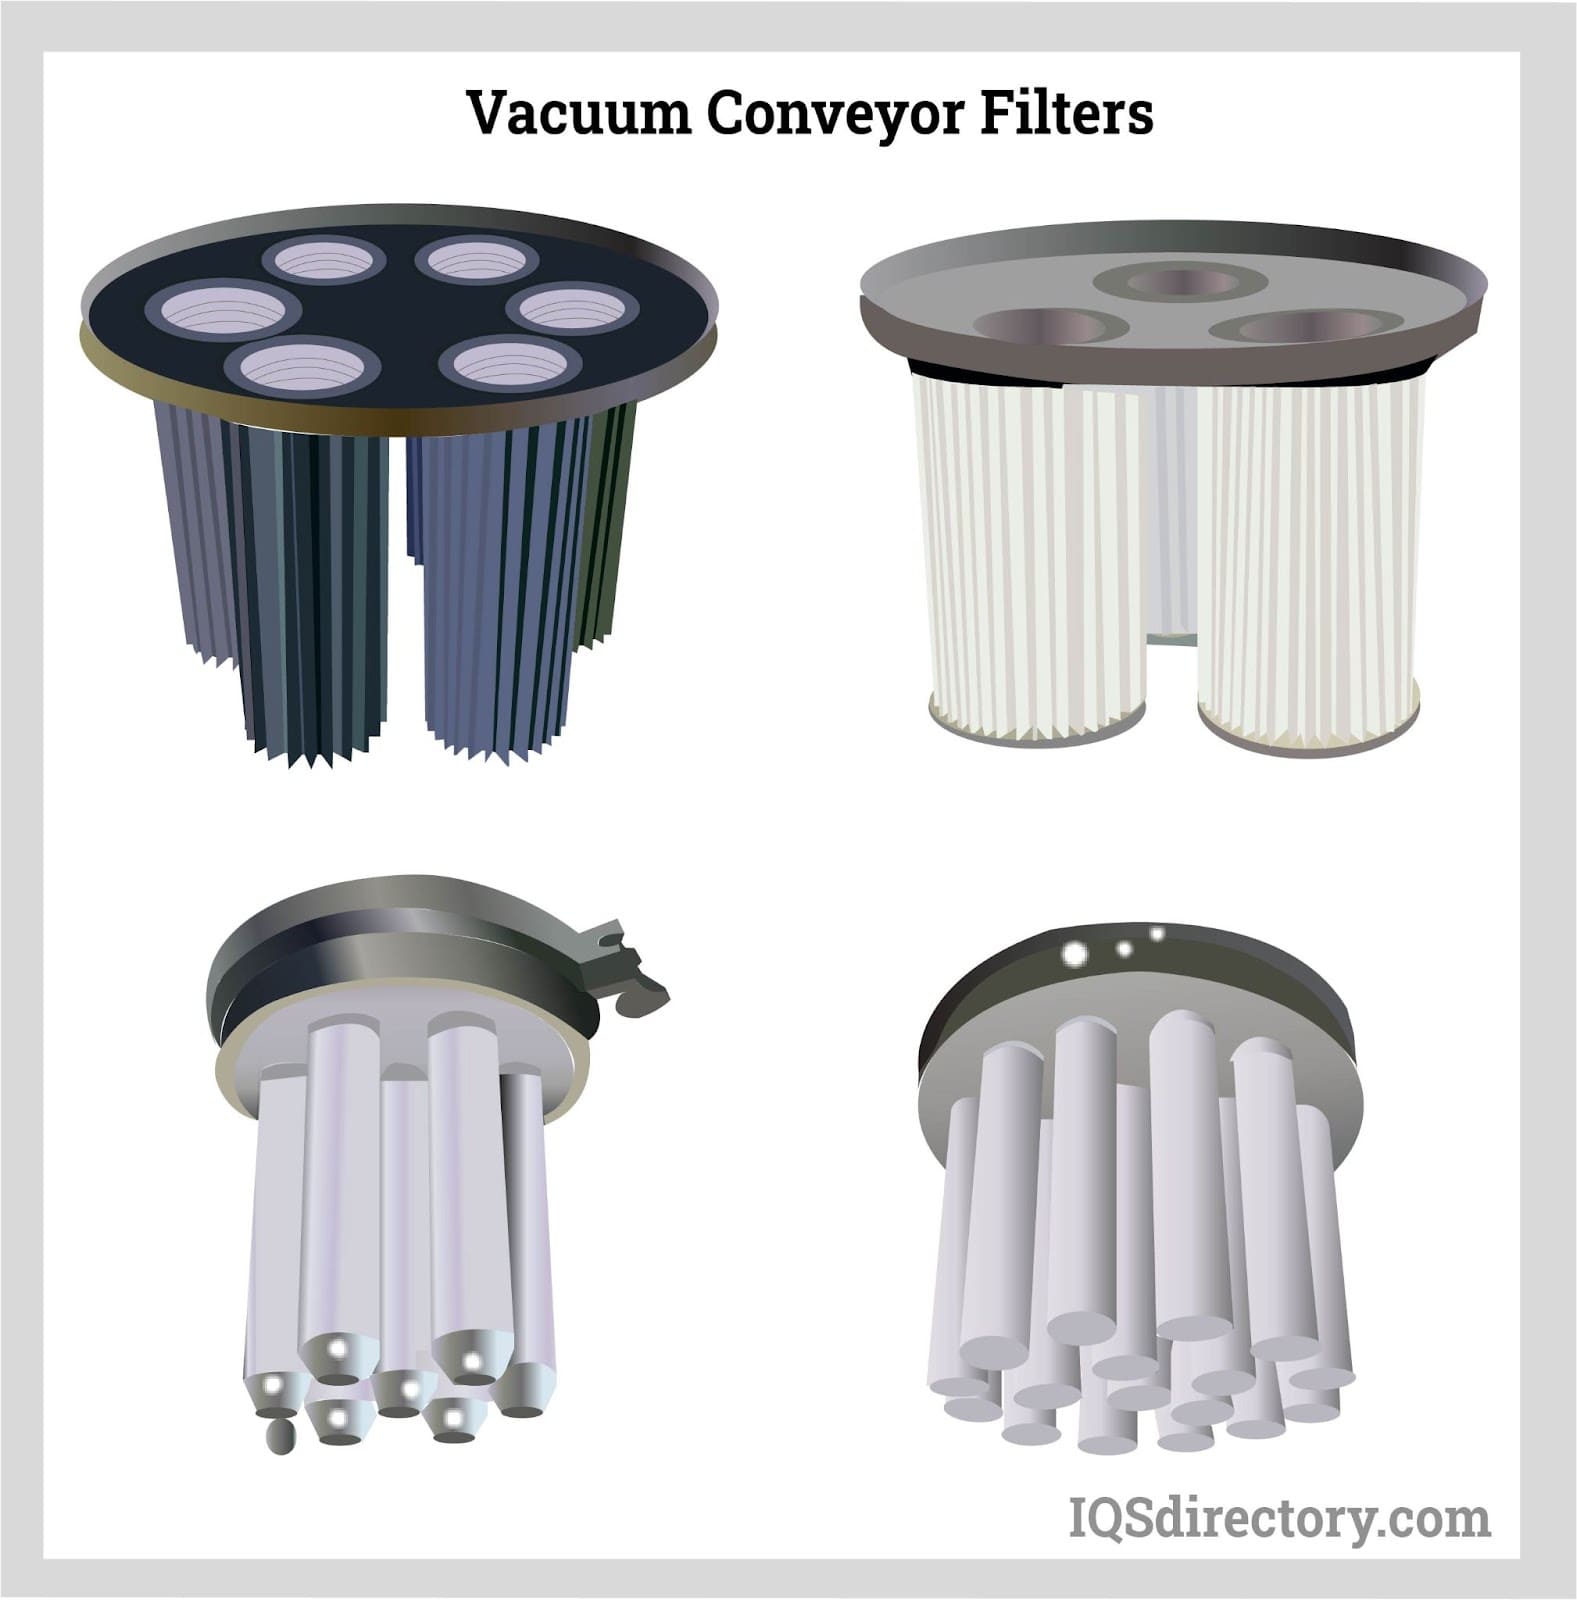 Vacuum Conveyor Filters